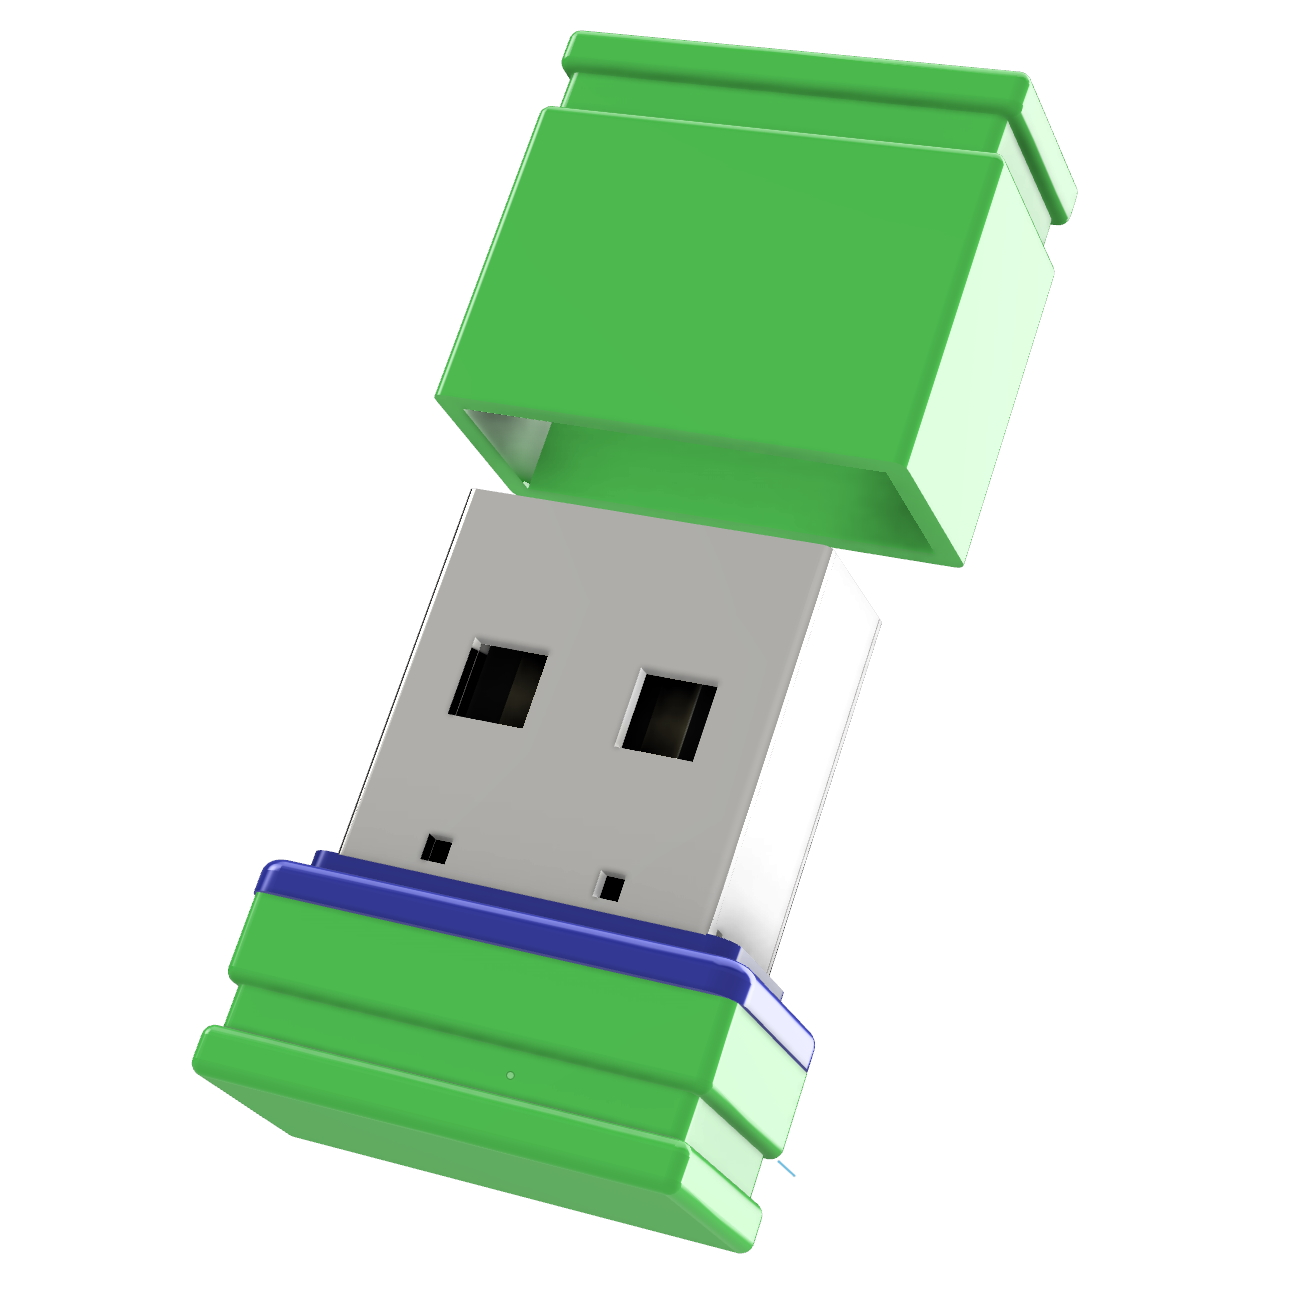 32 (Grün/Blau, GB) USB USB-Stick GERMANY Mini ®ULTRA P1